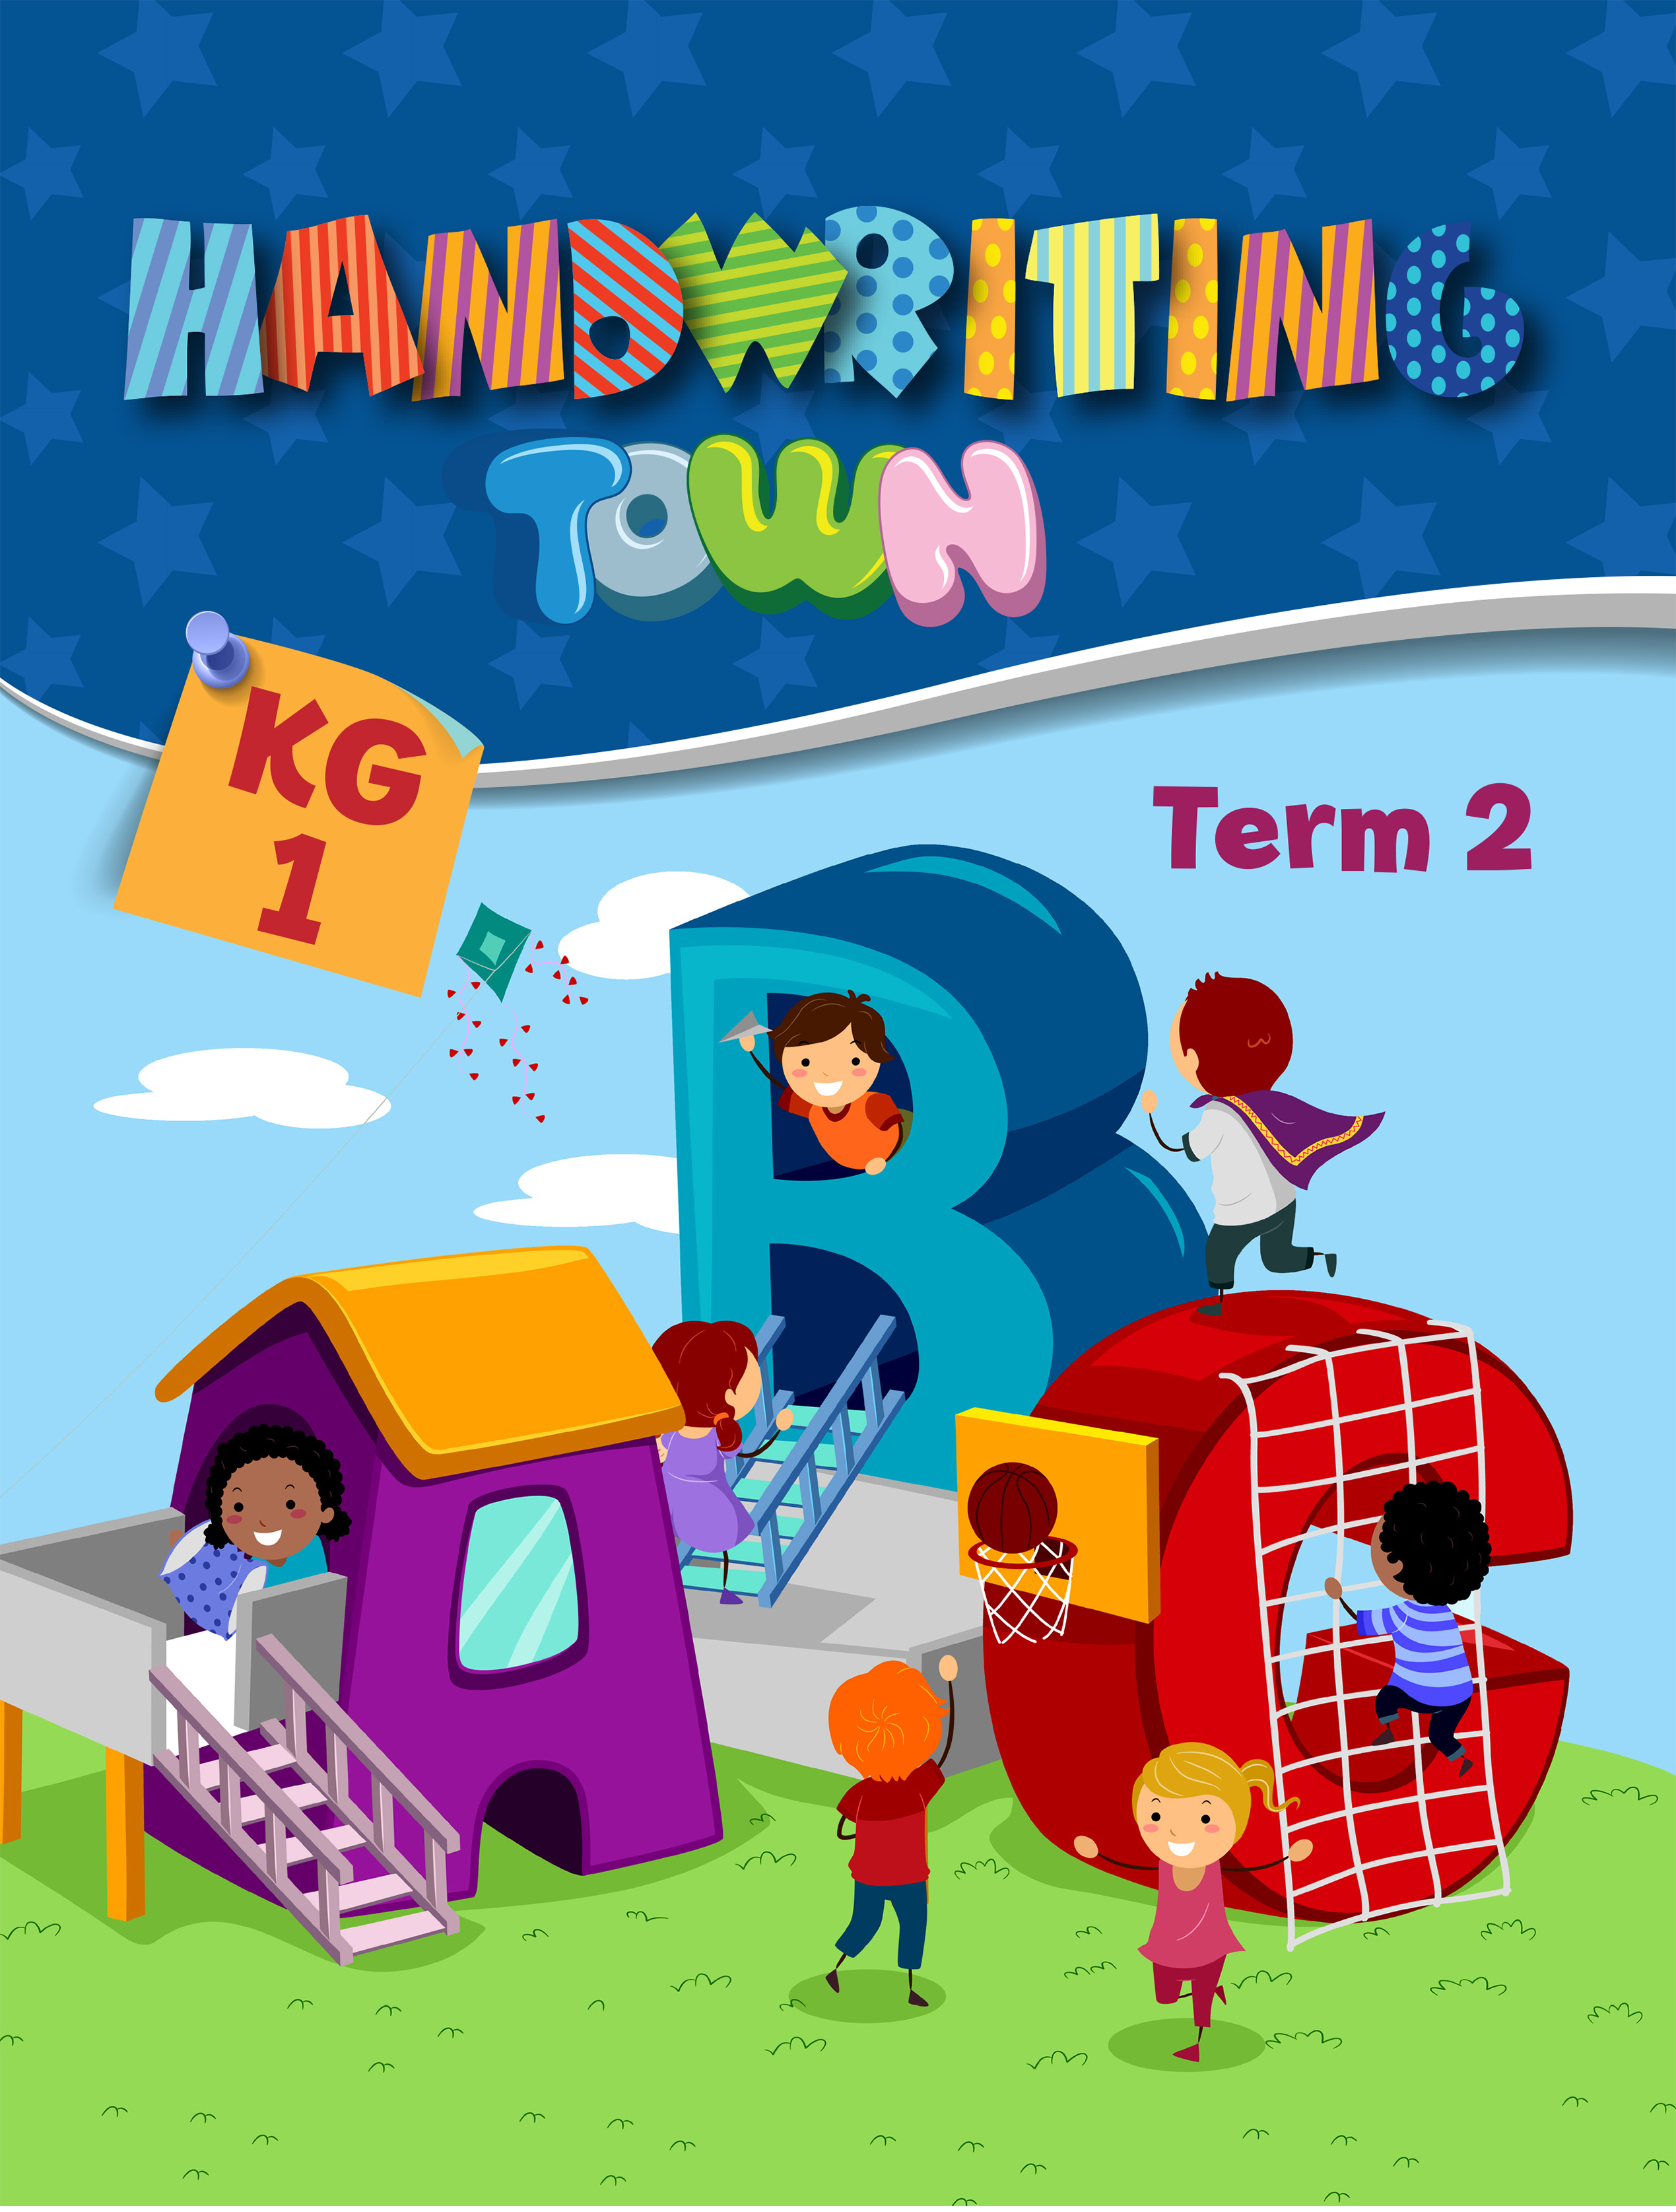 Handwriting Town KG1 Term 2